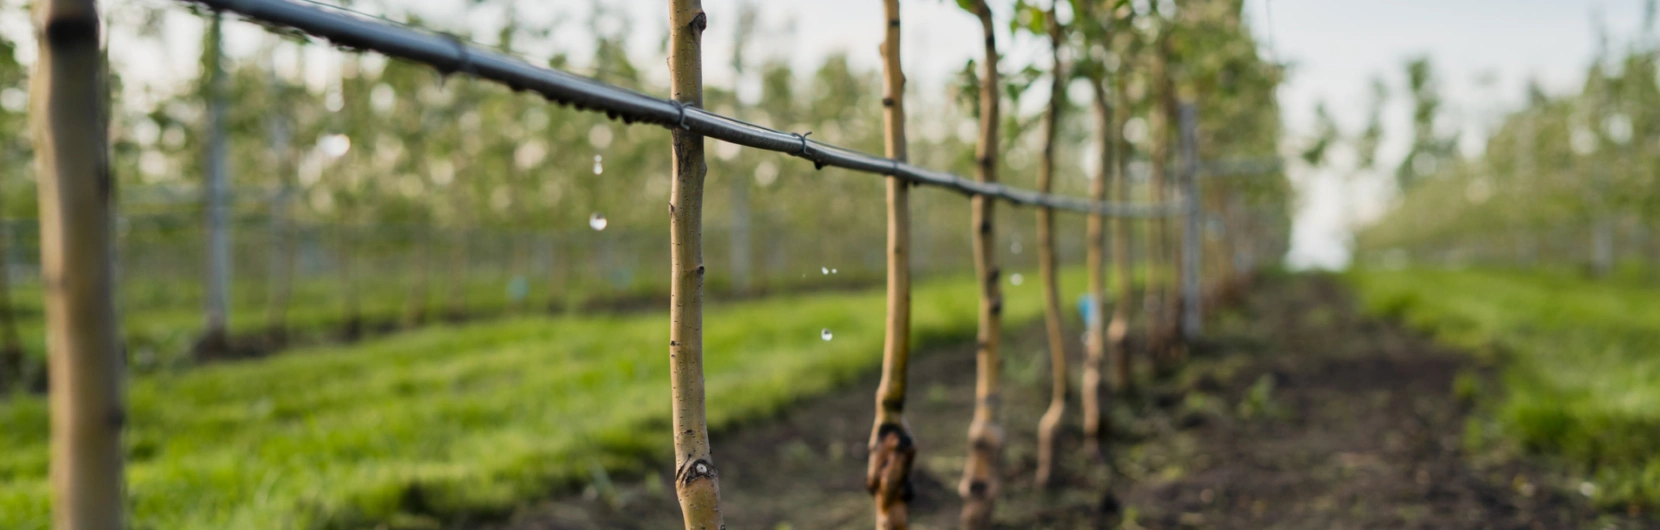 Monitoramento de irrigação e nutrição no solo em horticultura